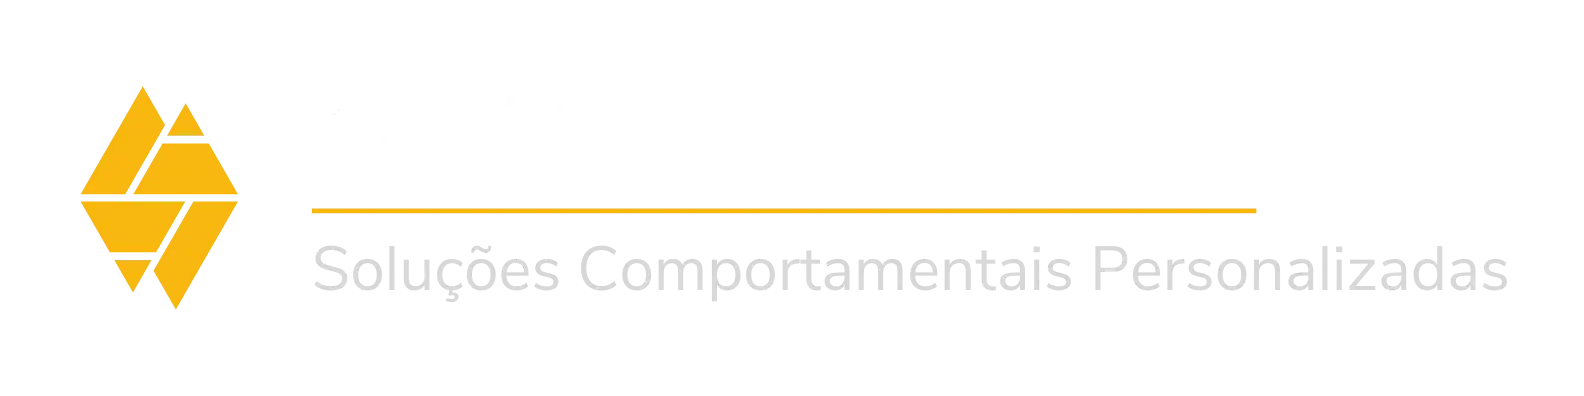 Logotipo Horizontal Carlos Magnus